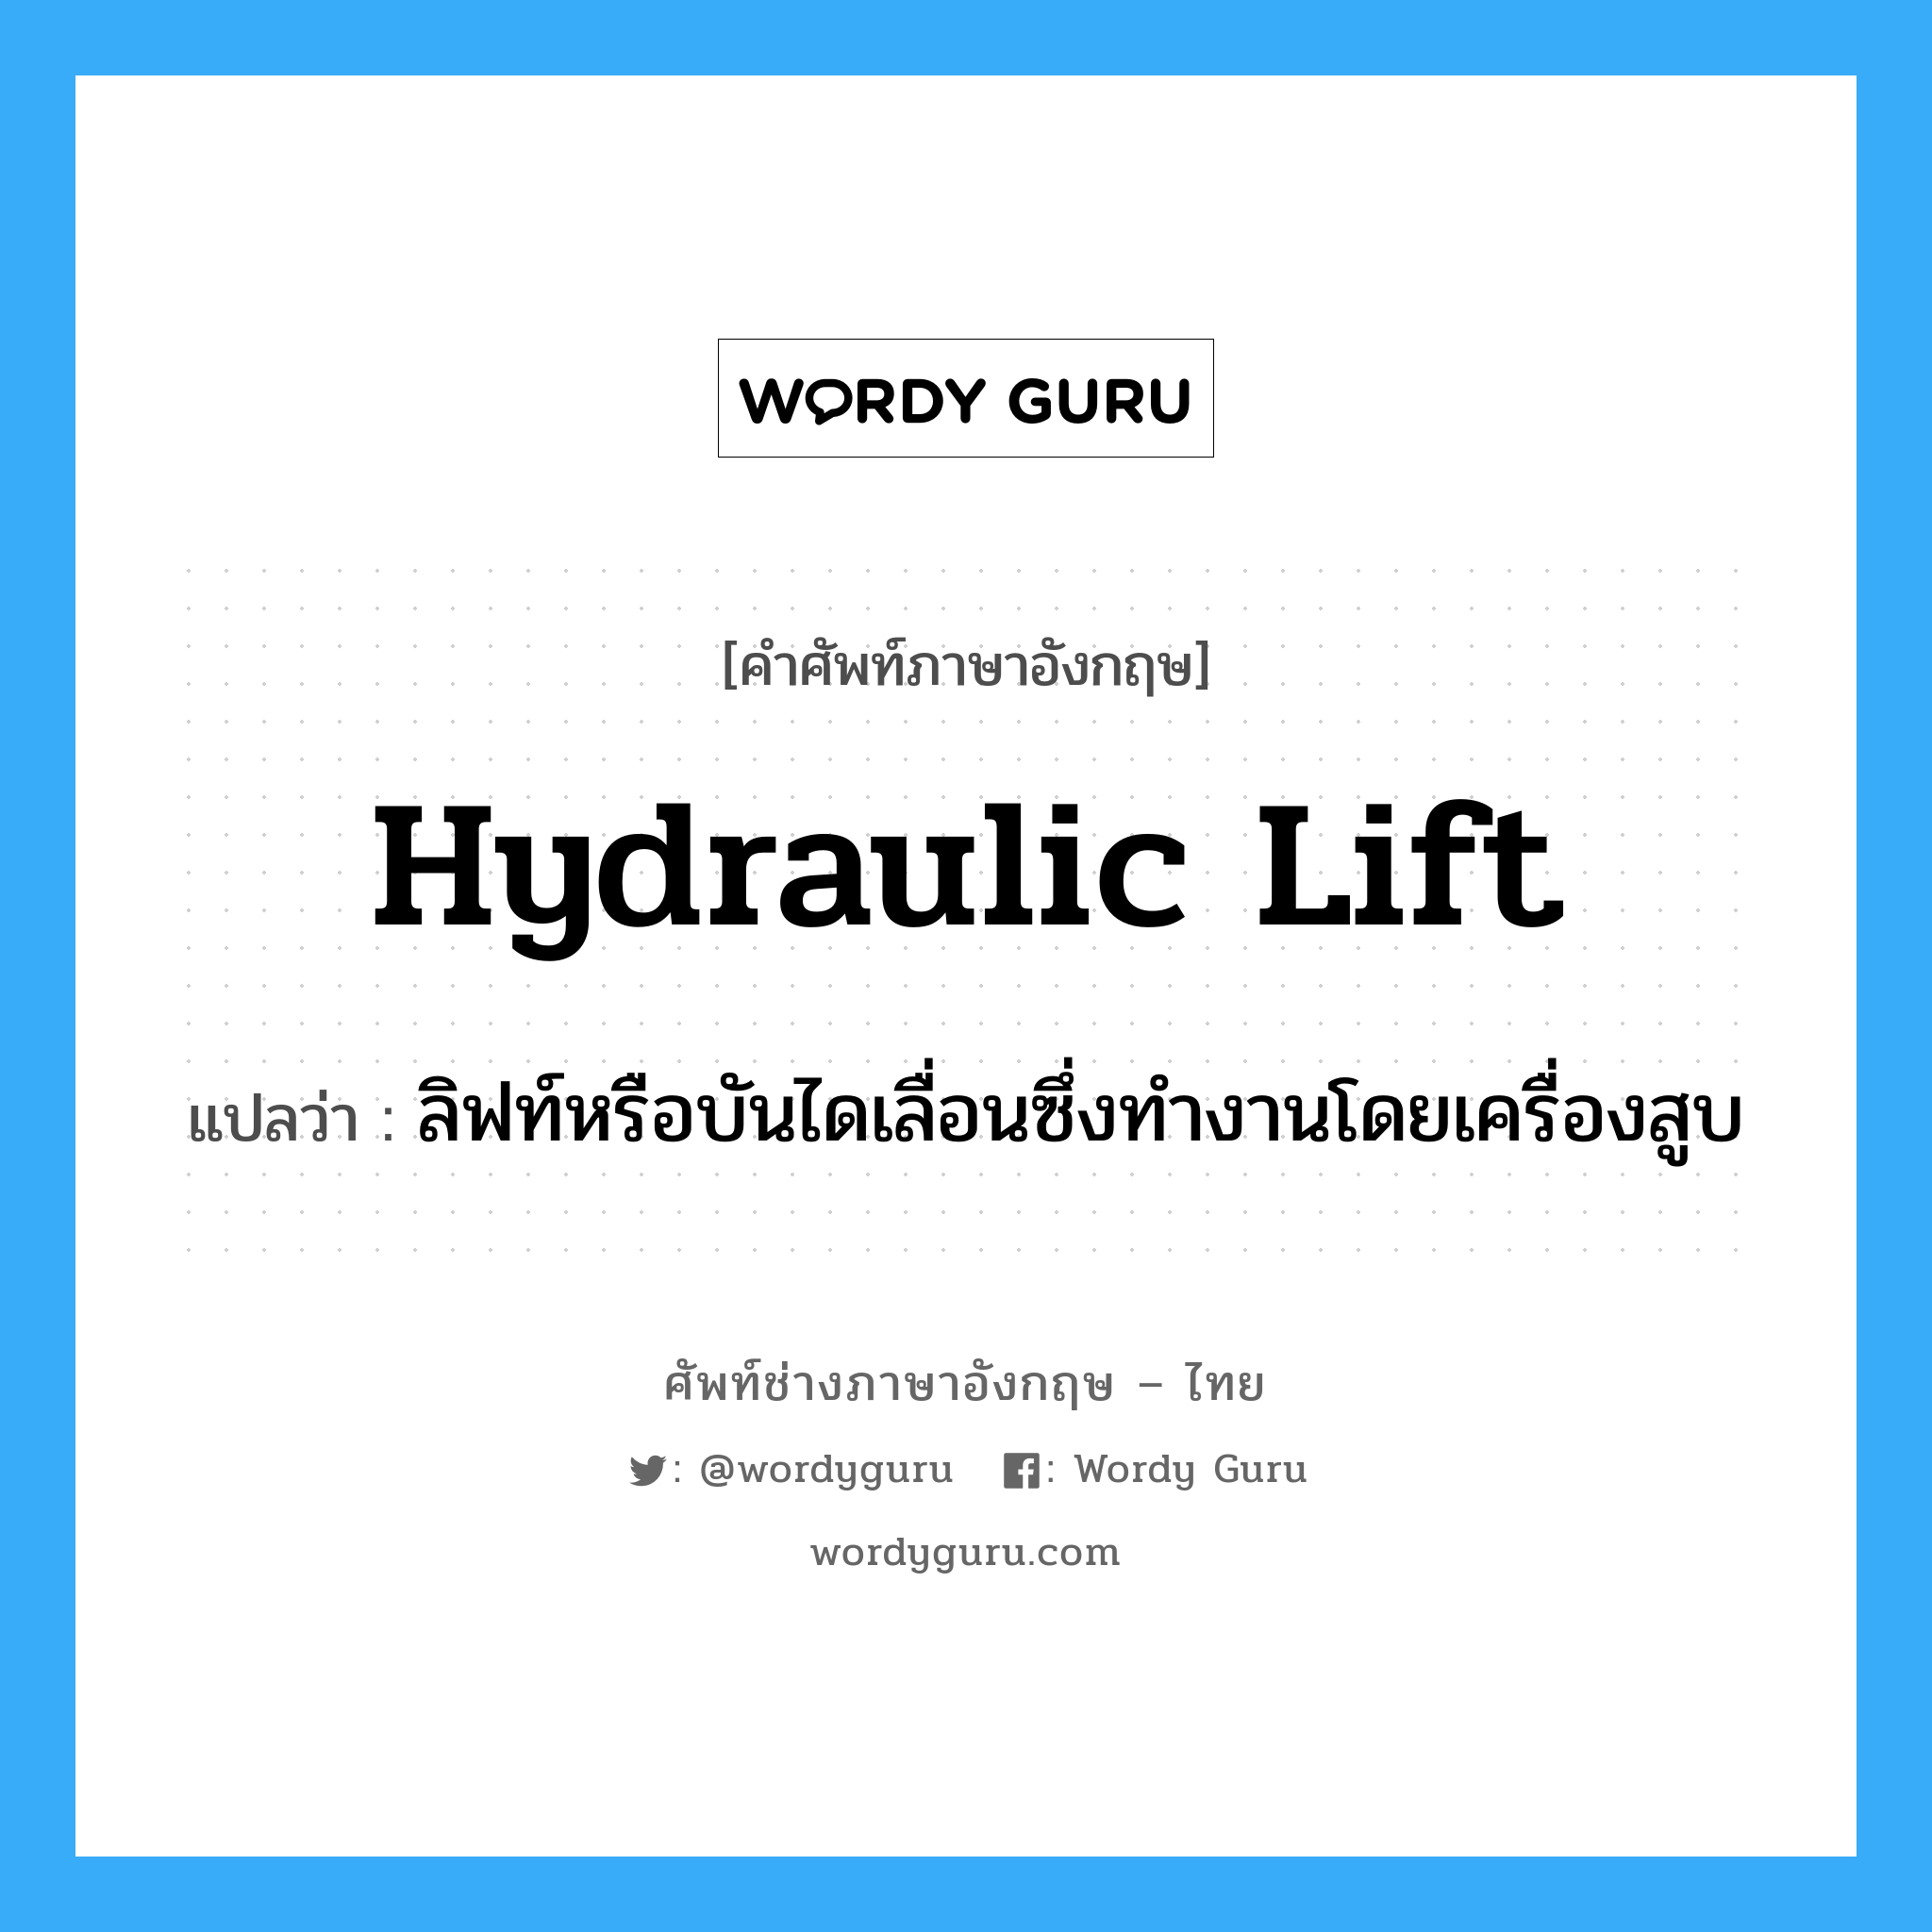 hydraulic lift แปลว่า?, คำศัพท์ช่างภาษาอังกฤษ - ไทย hydraulic lift คำศัพท์ภาษาอังกฤษ hydraulic lift แปลว่า ลิฟท์หรือบันไดเลื่อนซึ่งทำงานโดยเครื่องสูบ